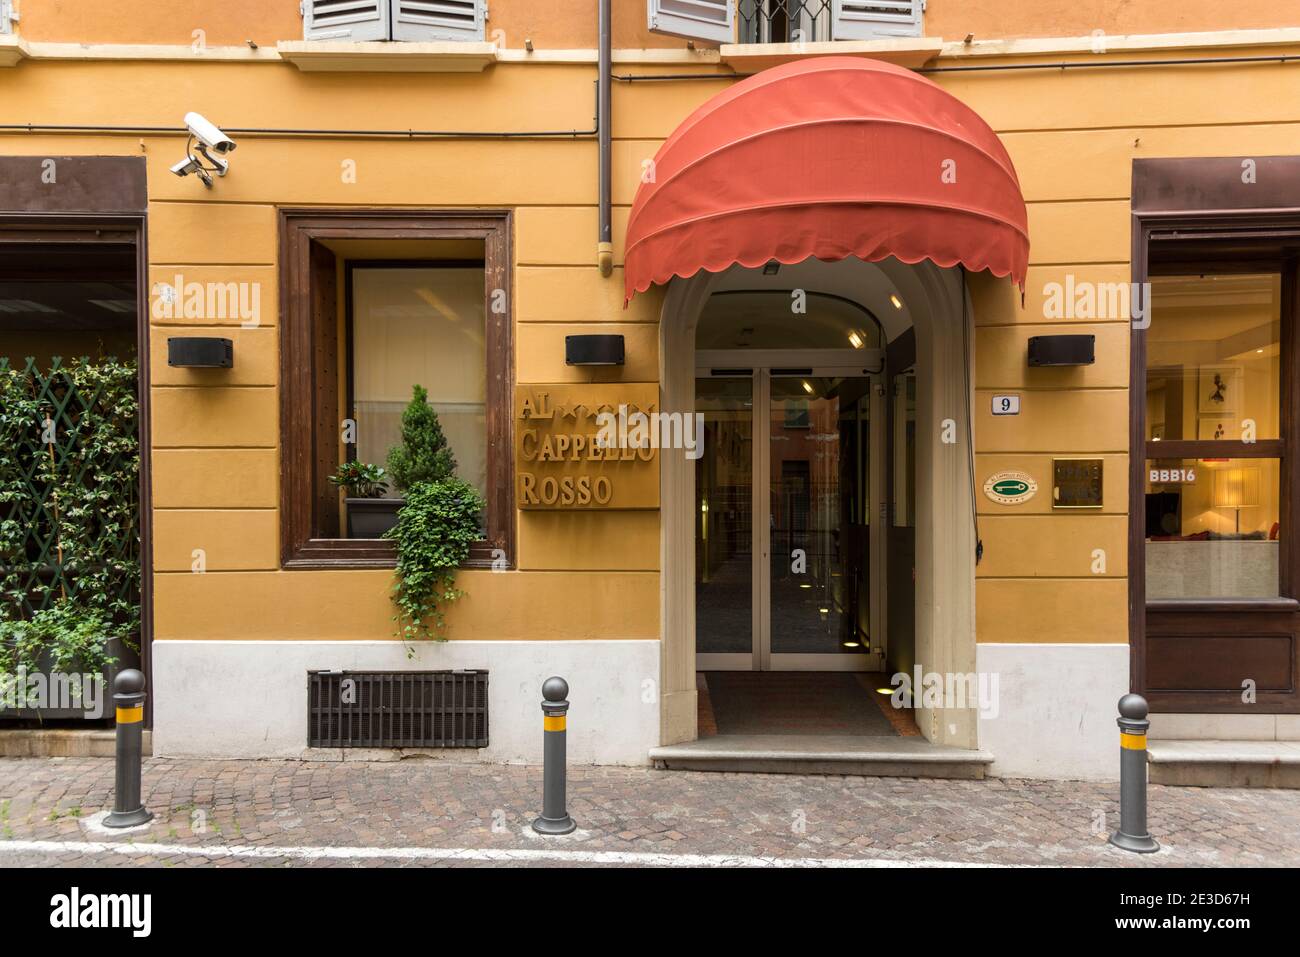 The Al Cappello Rosso hotel in Bologna Italy Stock Photo - Alamy